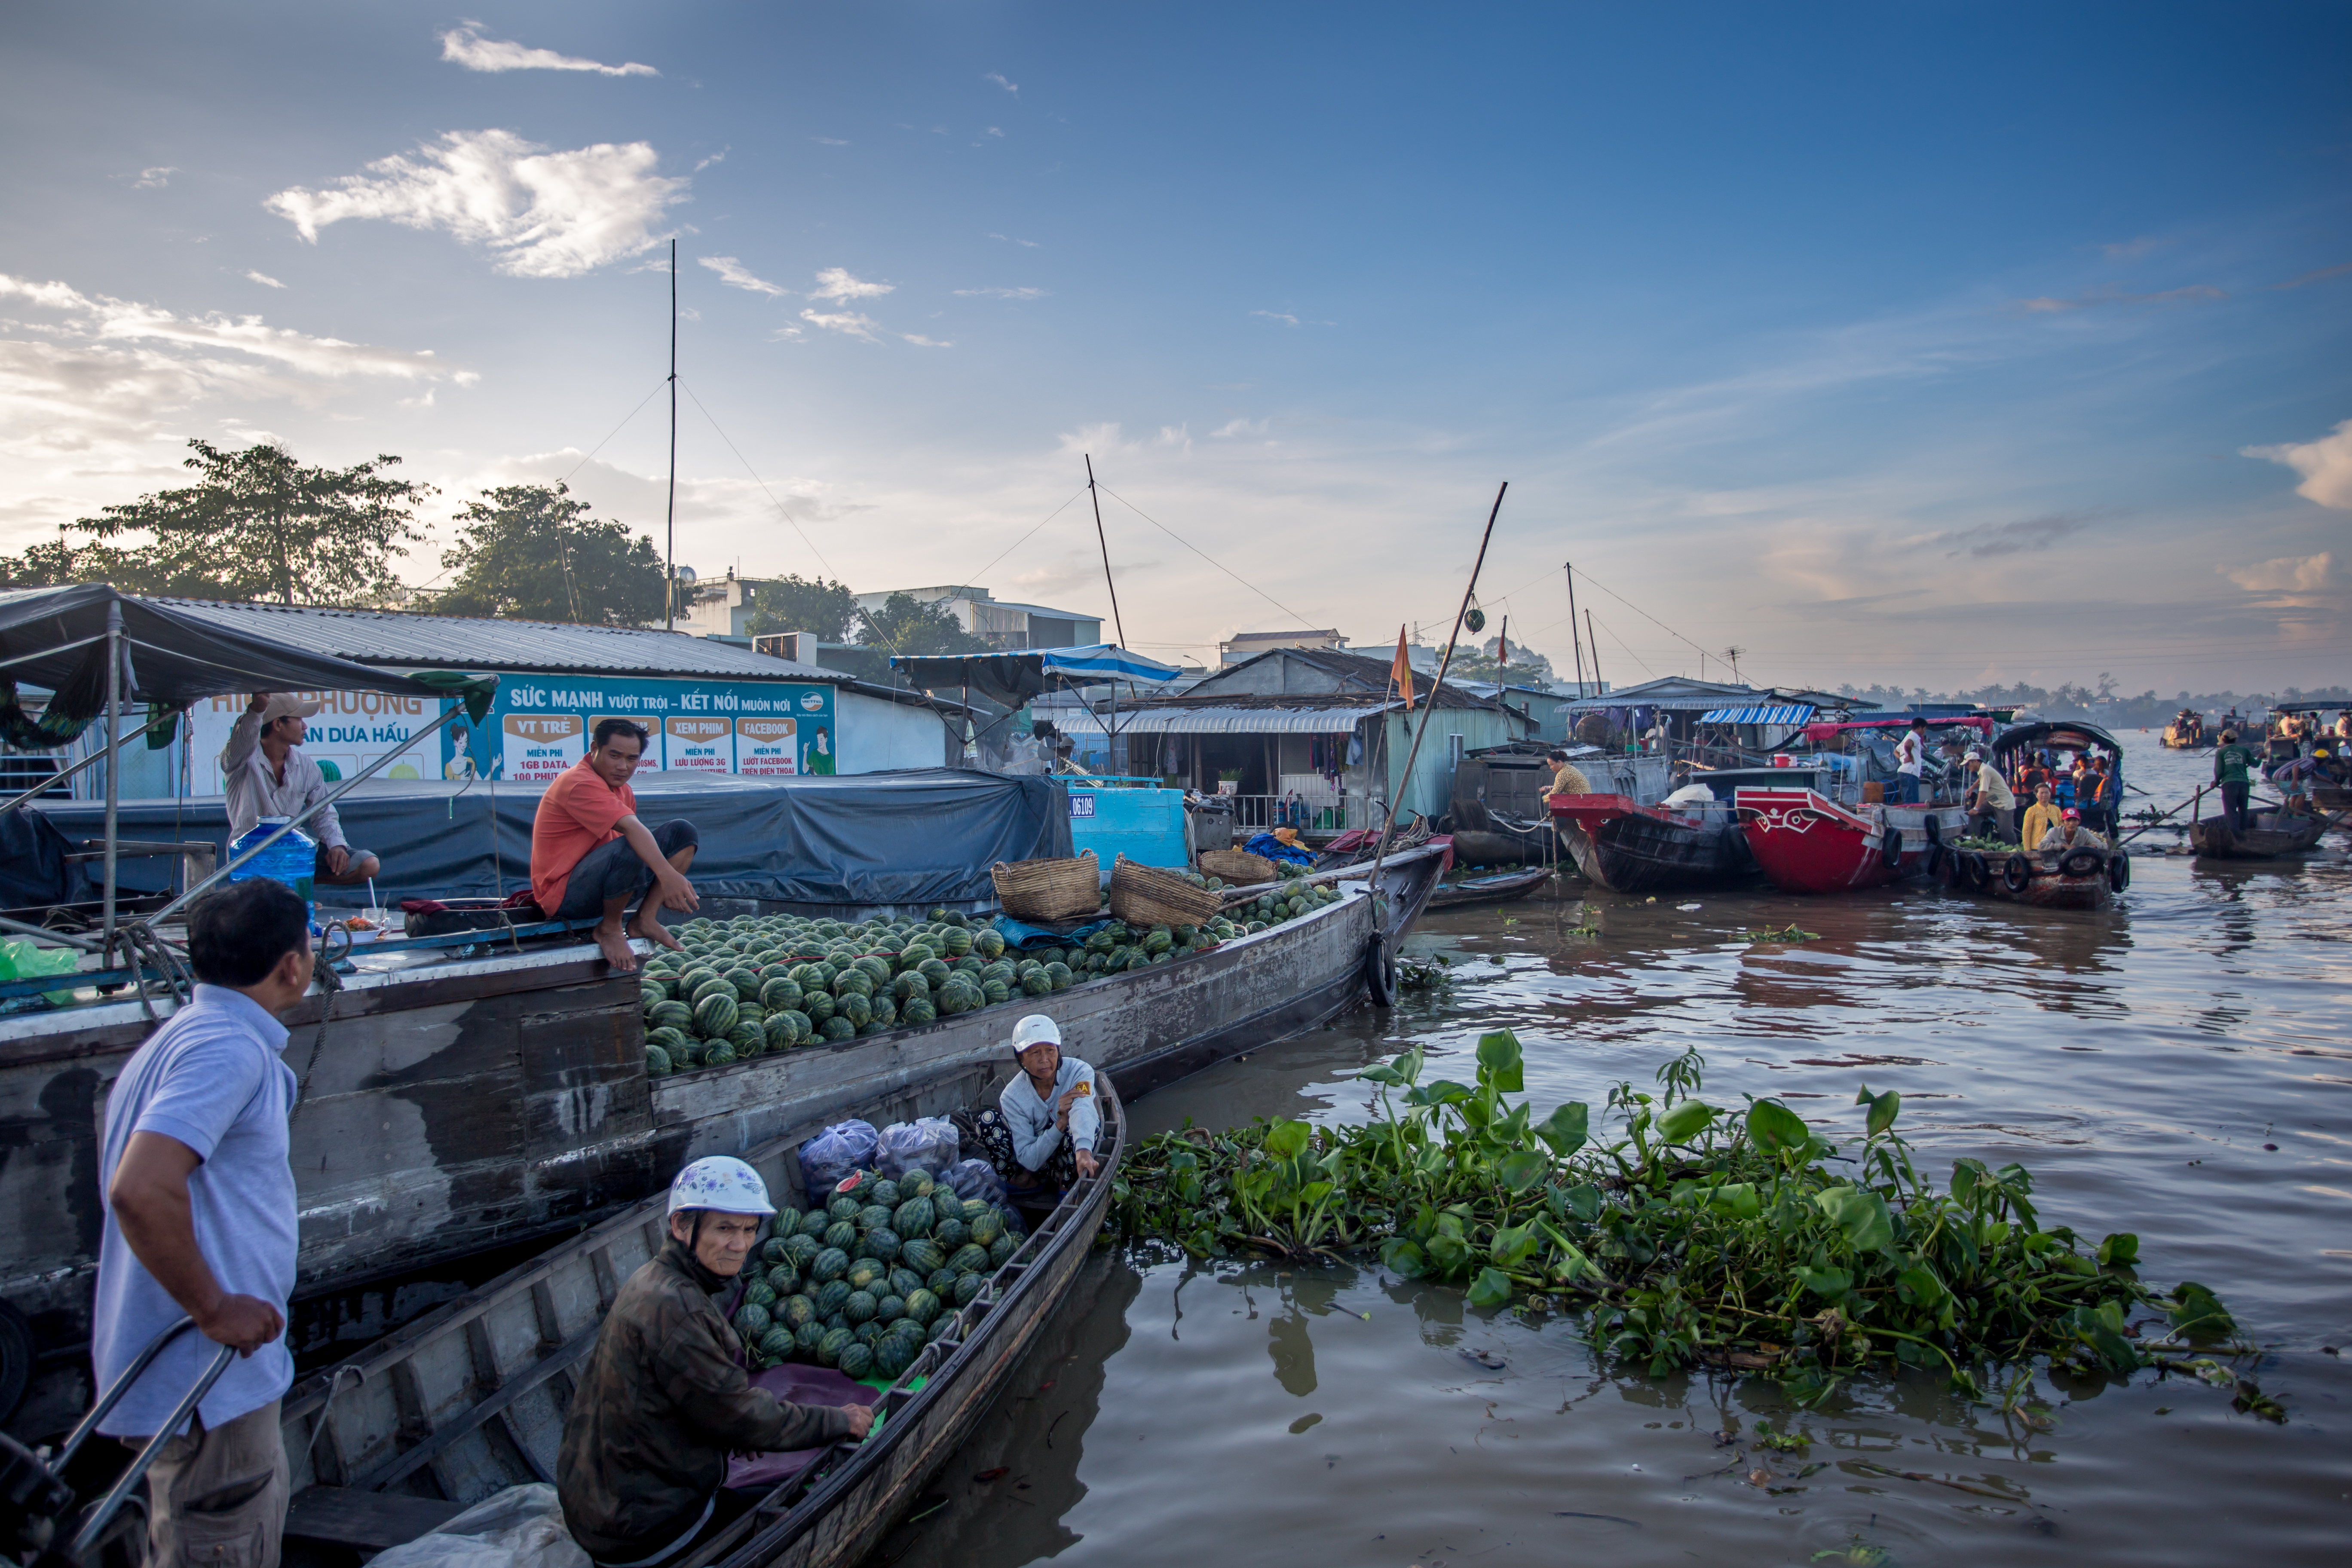 mekong delta floating market